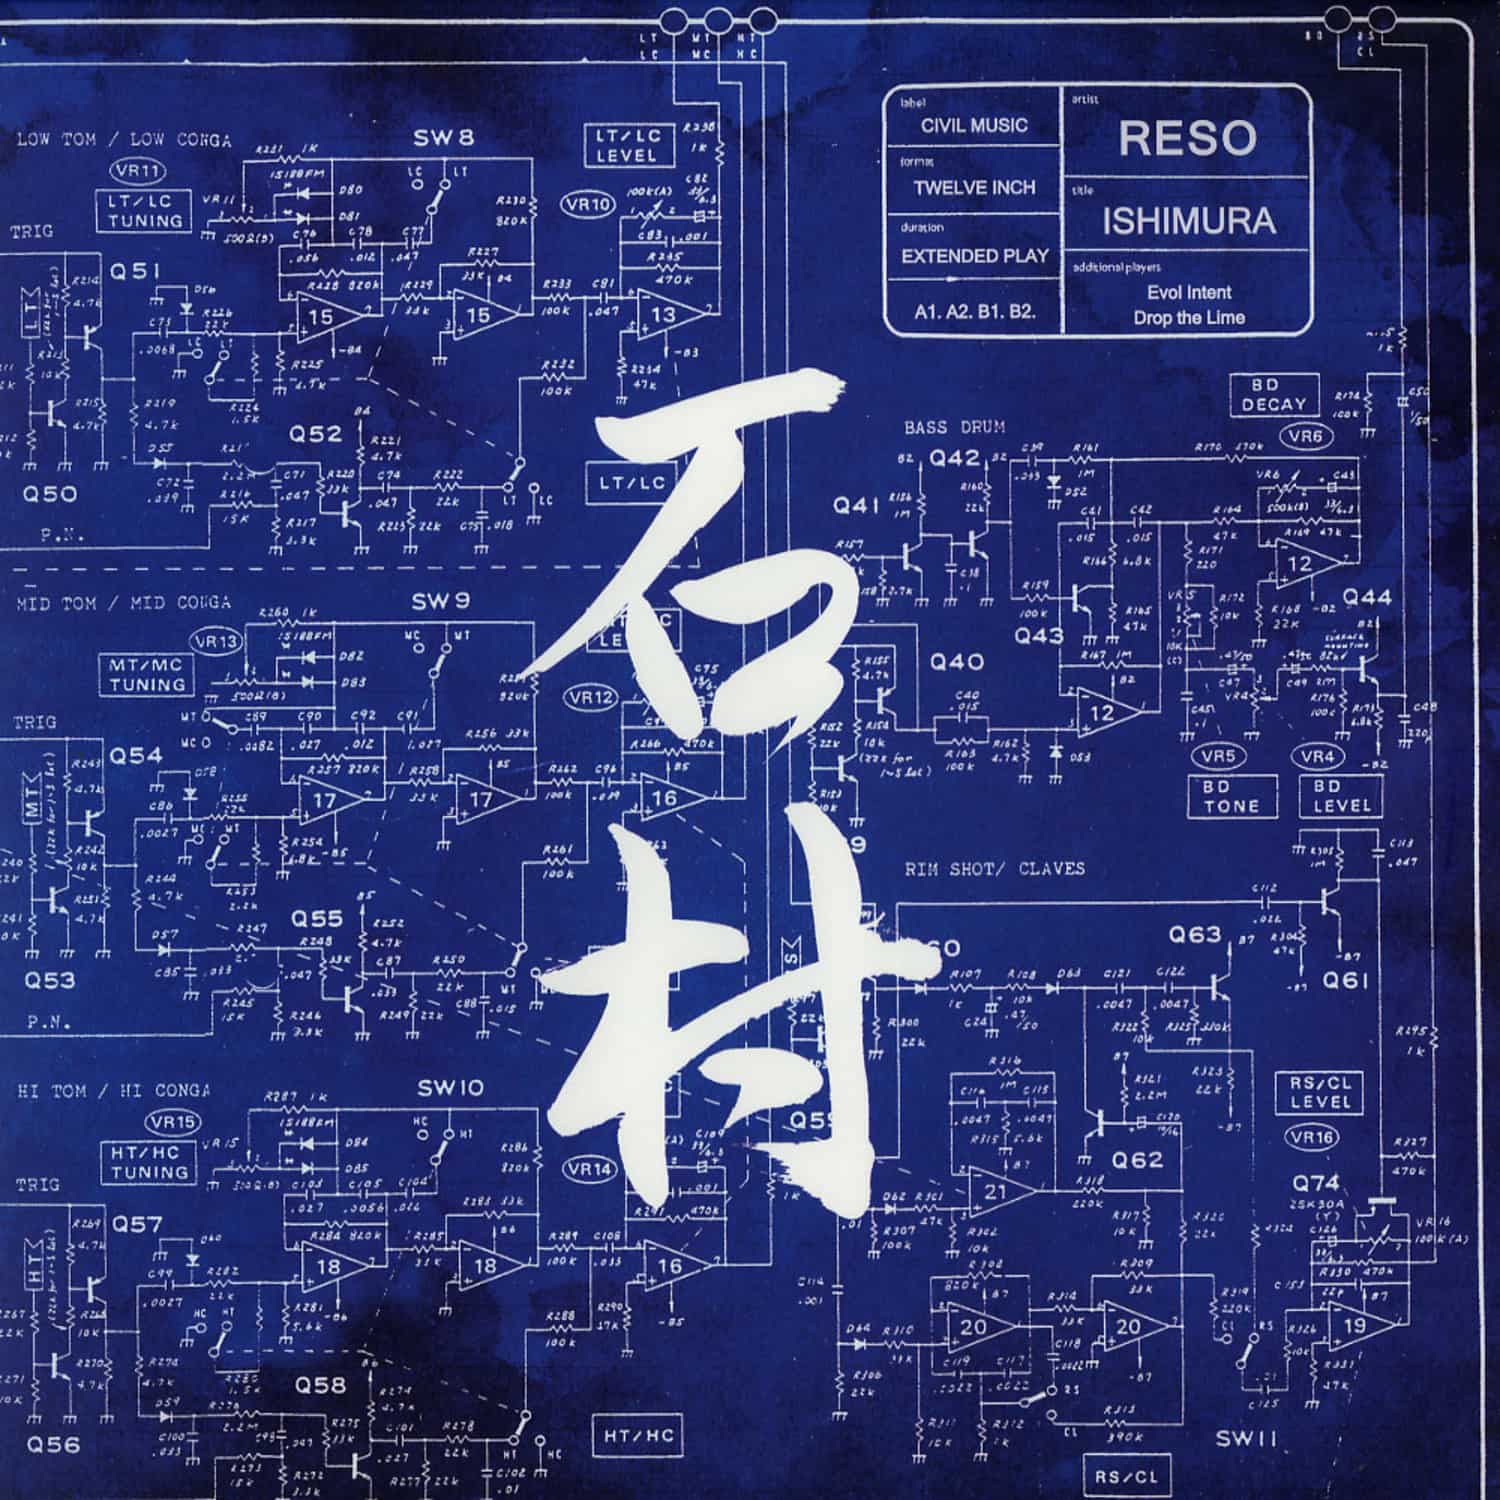 Reso - ISHIMURA EP 